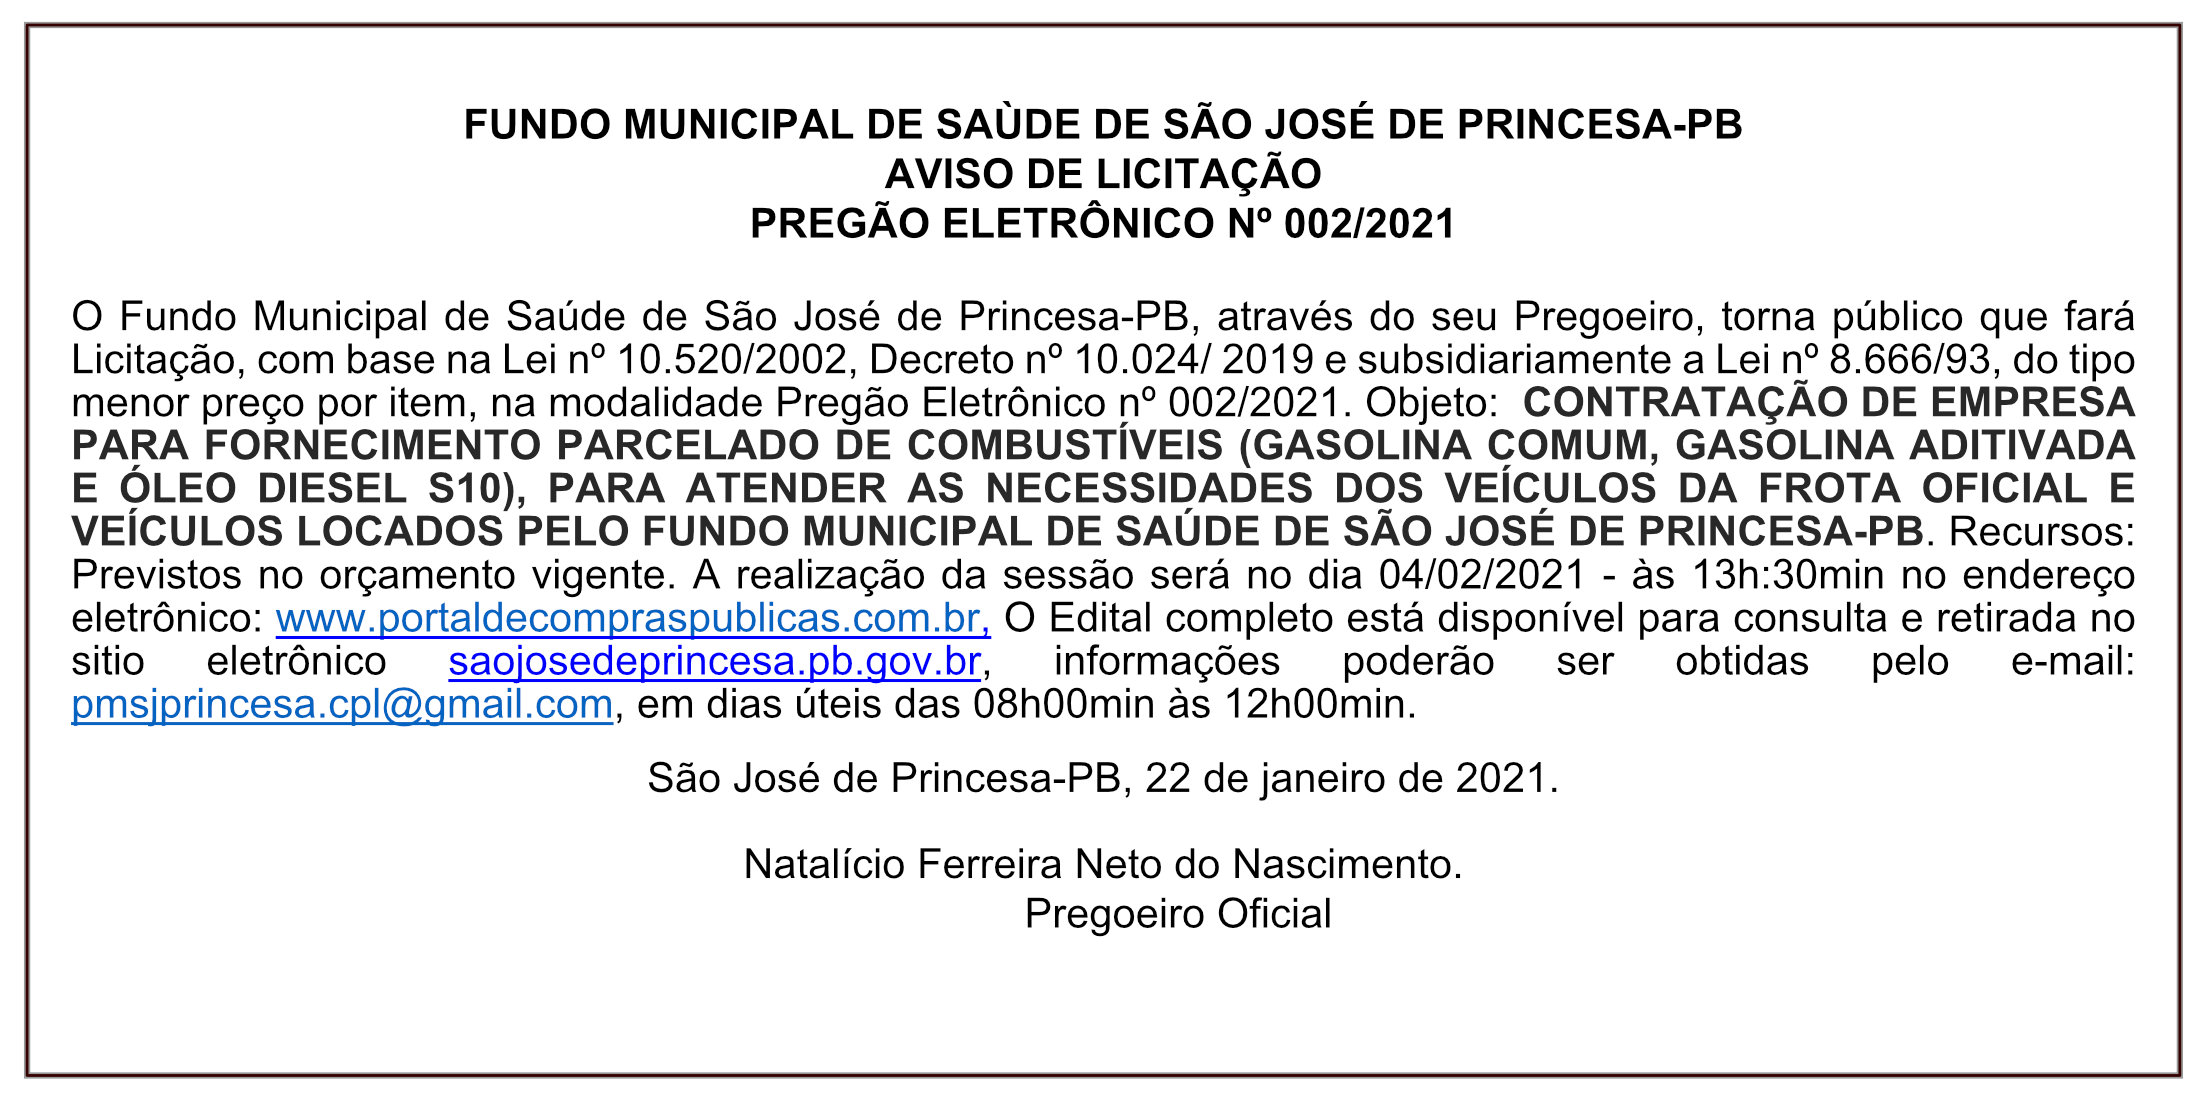 FUNDO MUNICIPAL DE SAÙDE DE SÃO JOSÉ DE PRINCESA – AVISO DE LICITAÇÃO – PREGÃO ELETRÔNICO Nº 002/2021